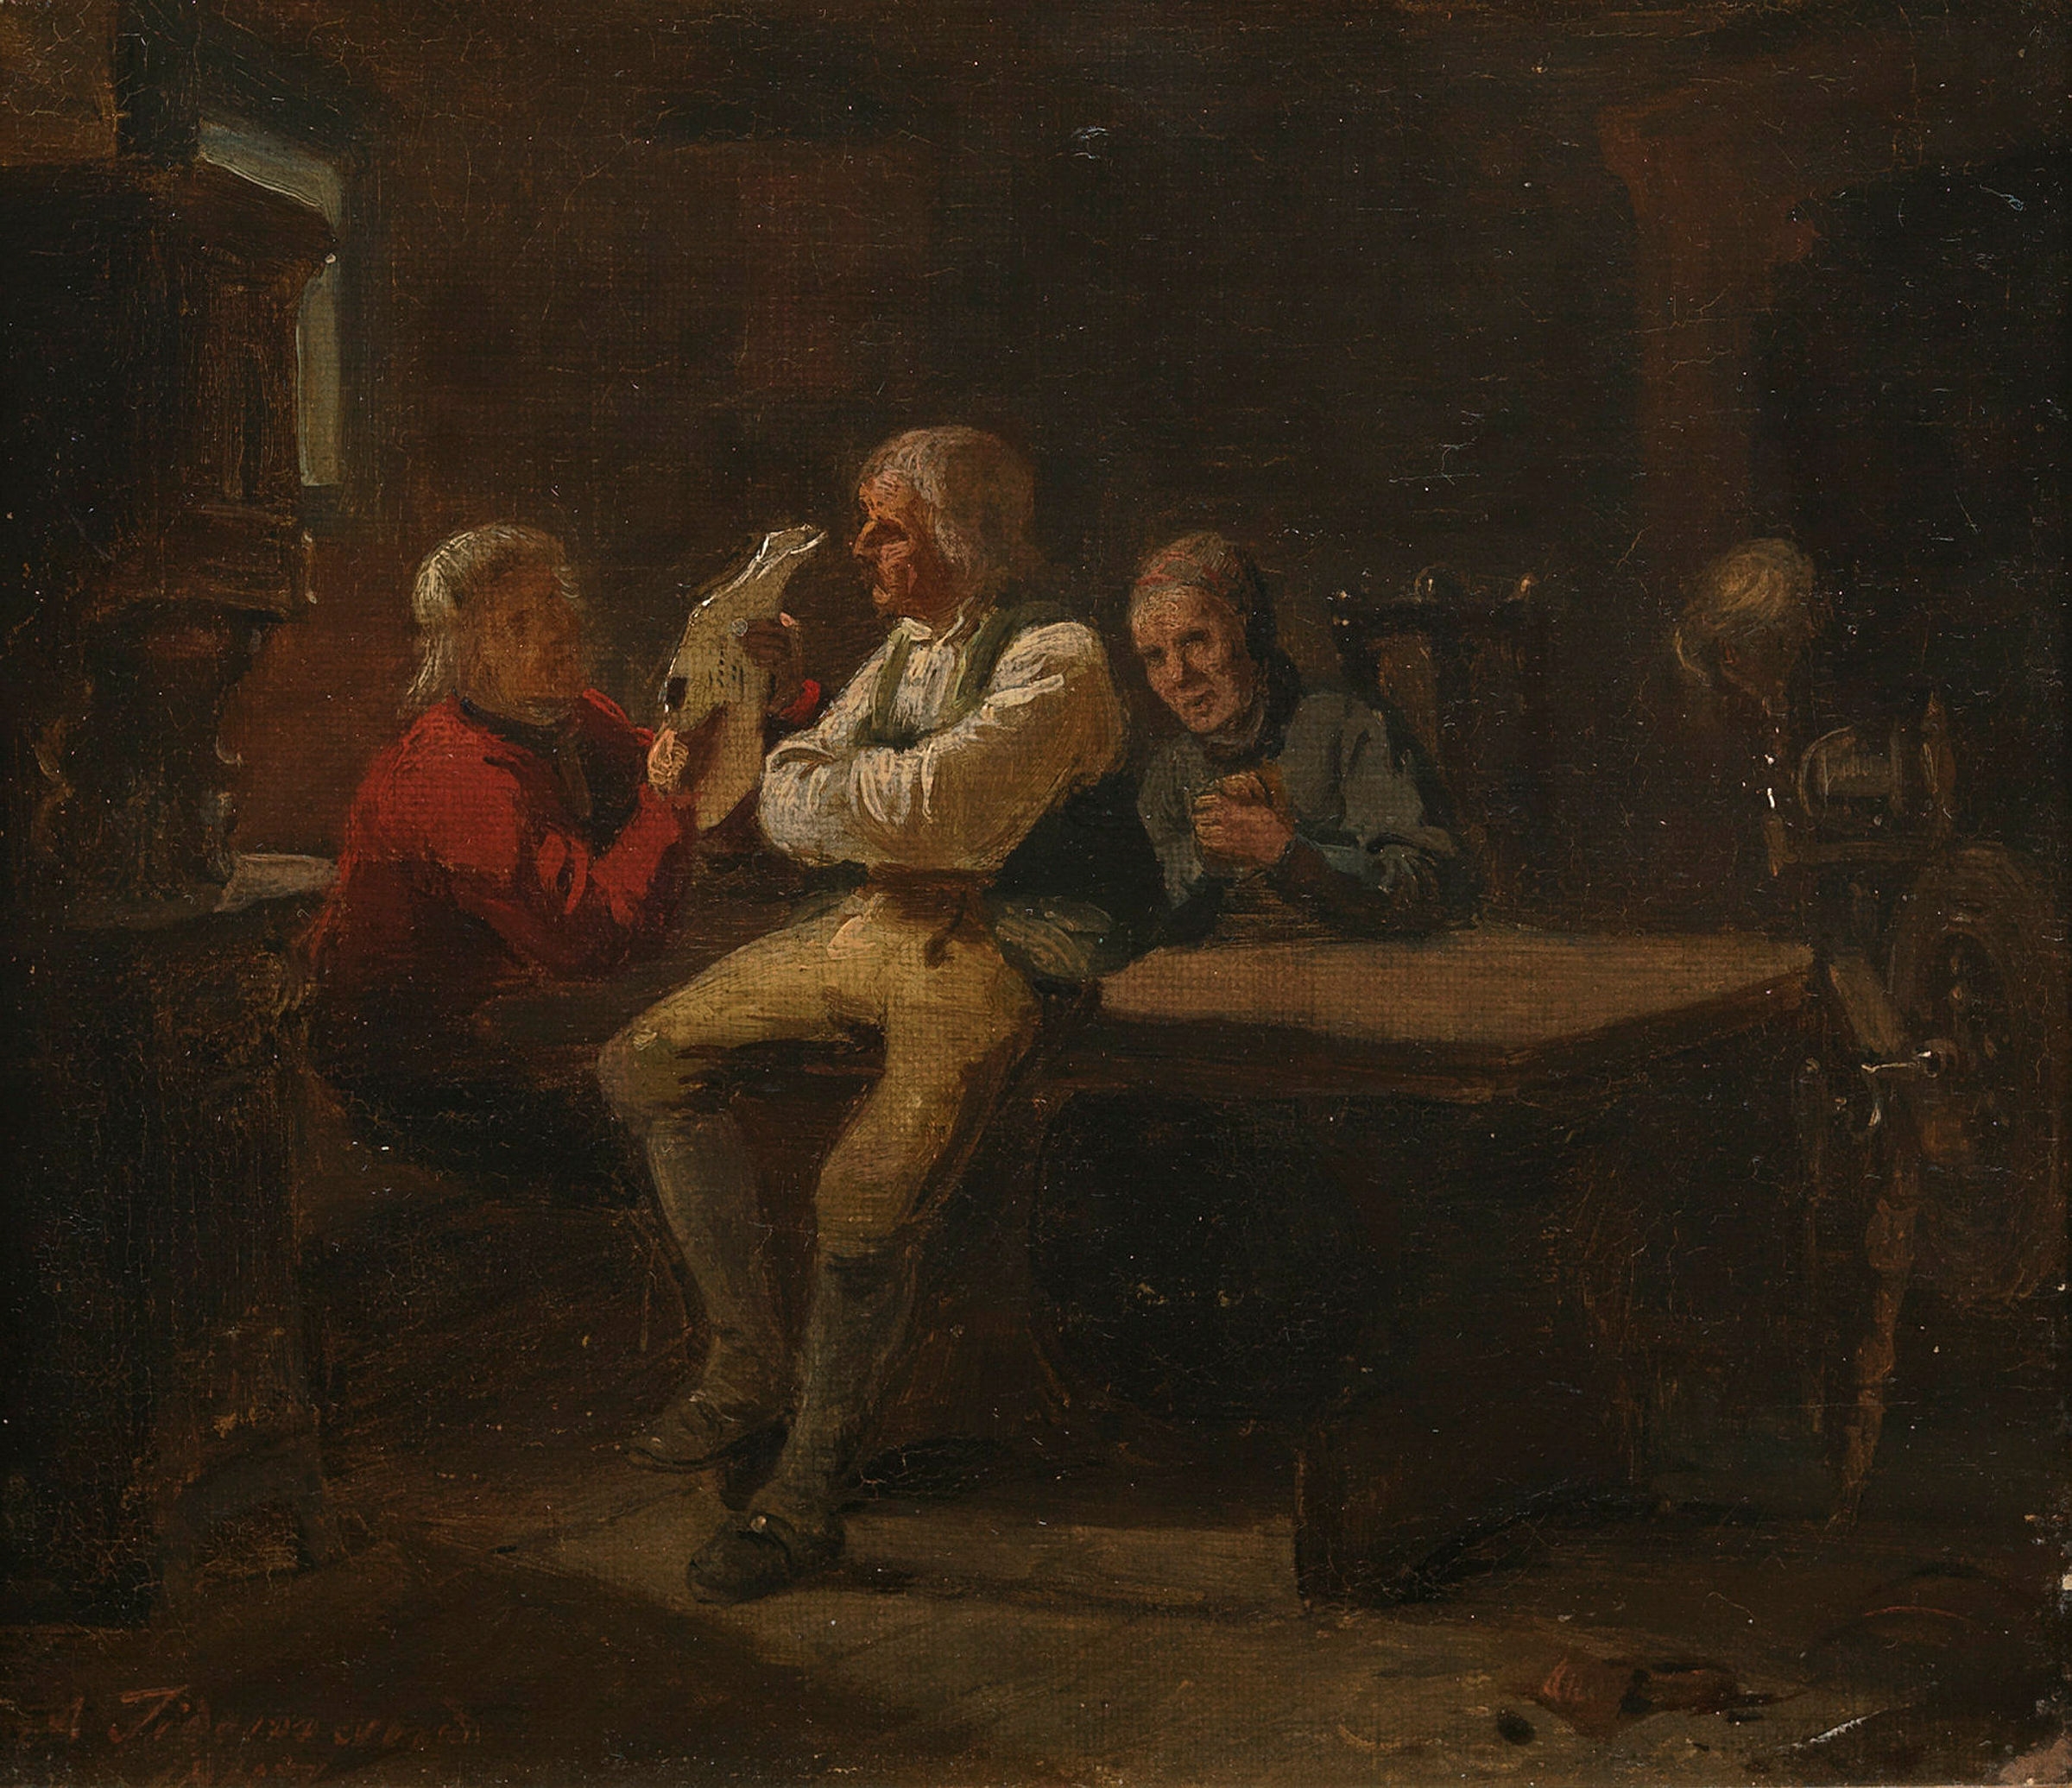 "Brevet fra Amerika" by Adolph Tidemand, 1847